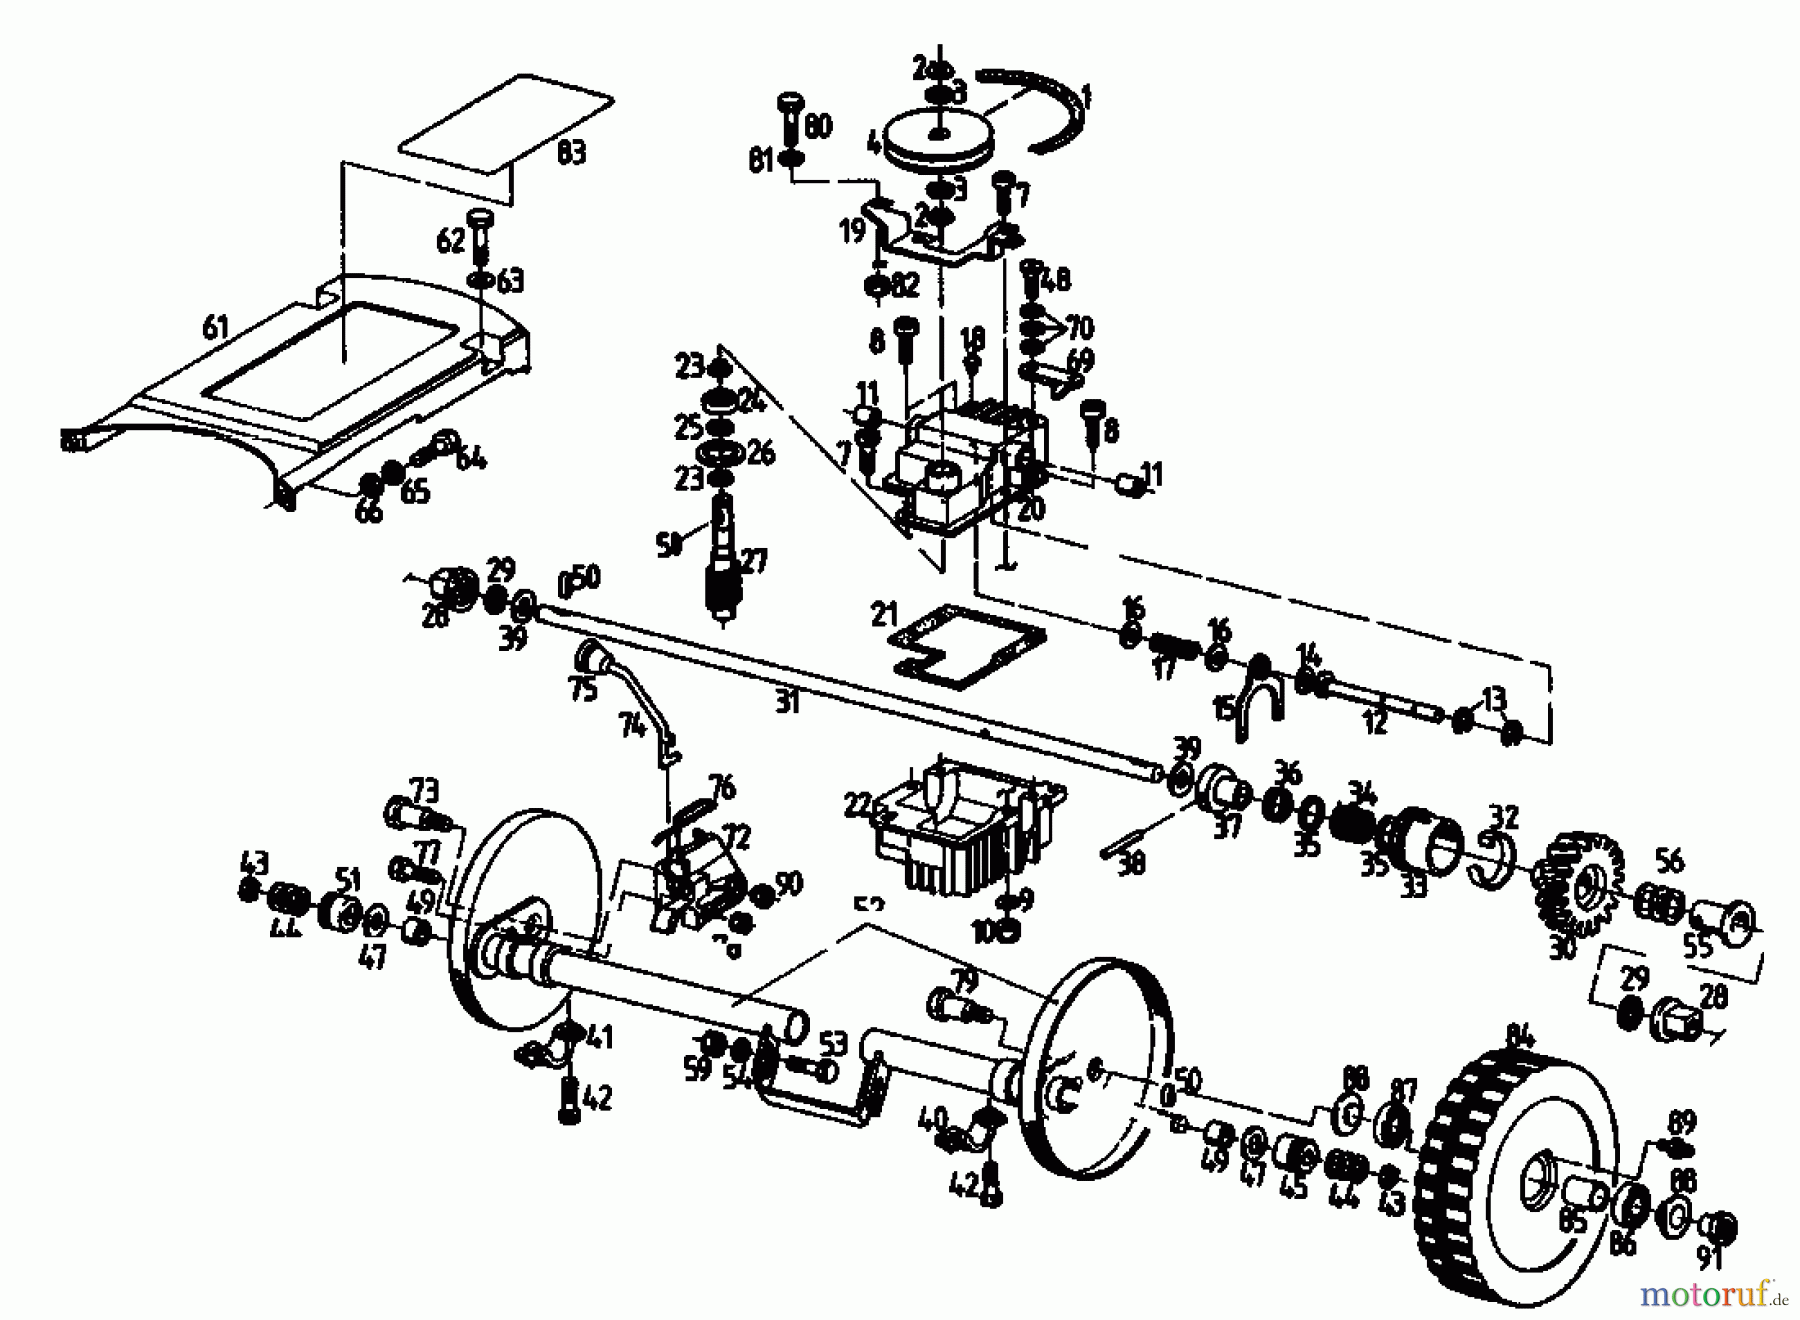  Gutbrod Petrol mower self propelled MS 482 PR 04016.03  (1992) Gearbox